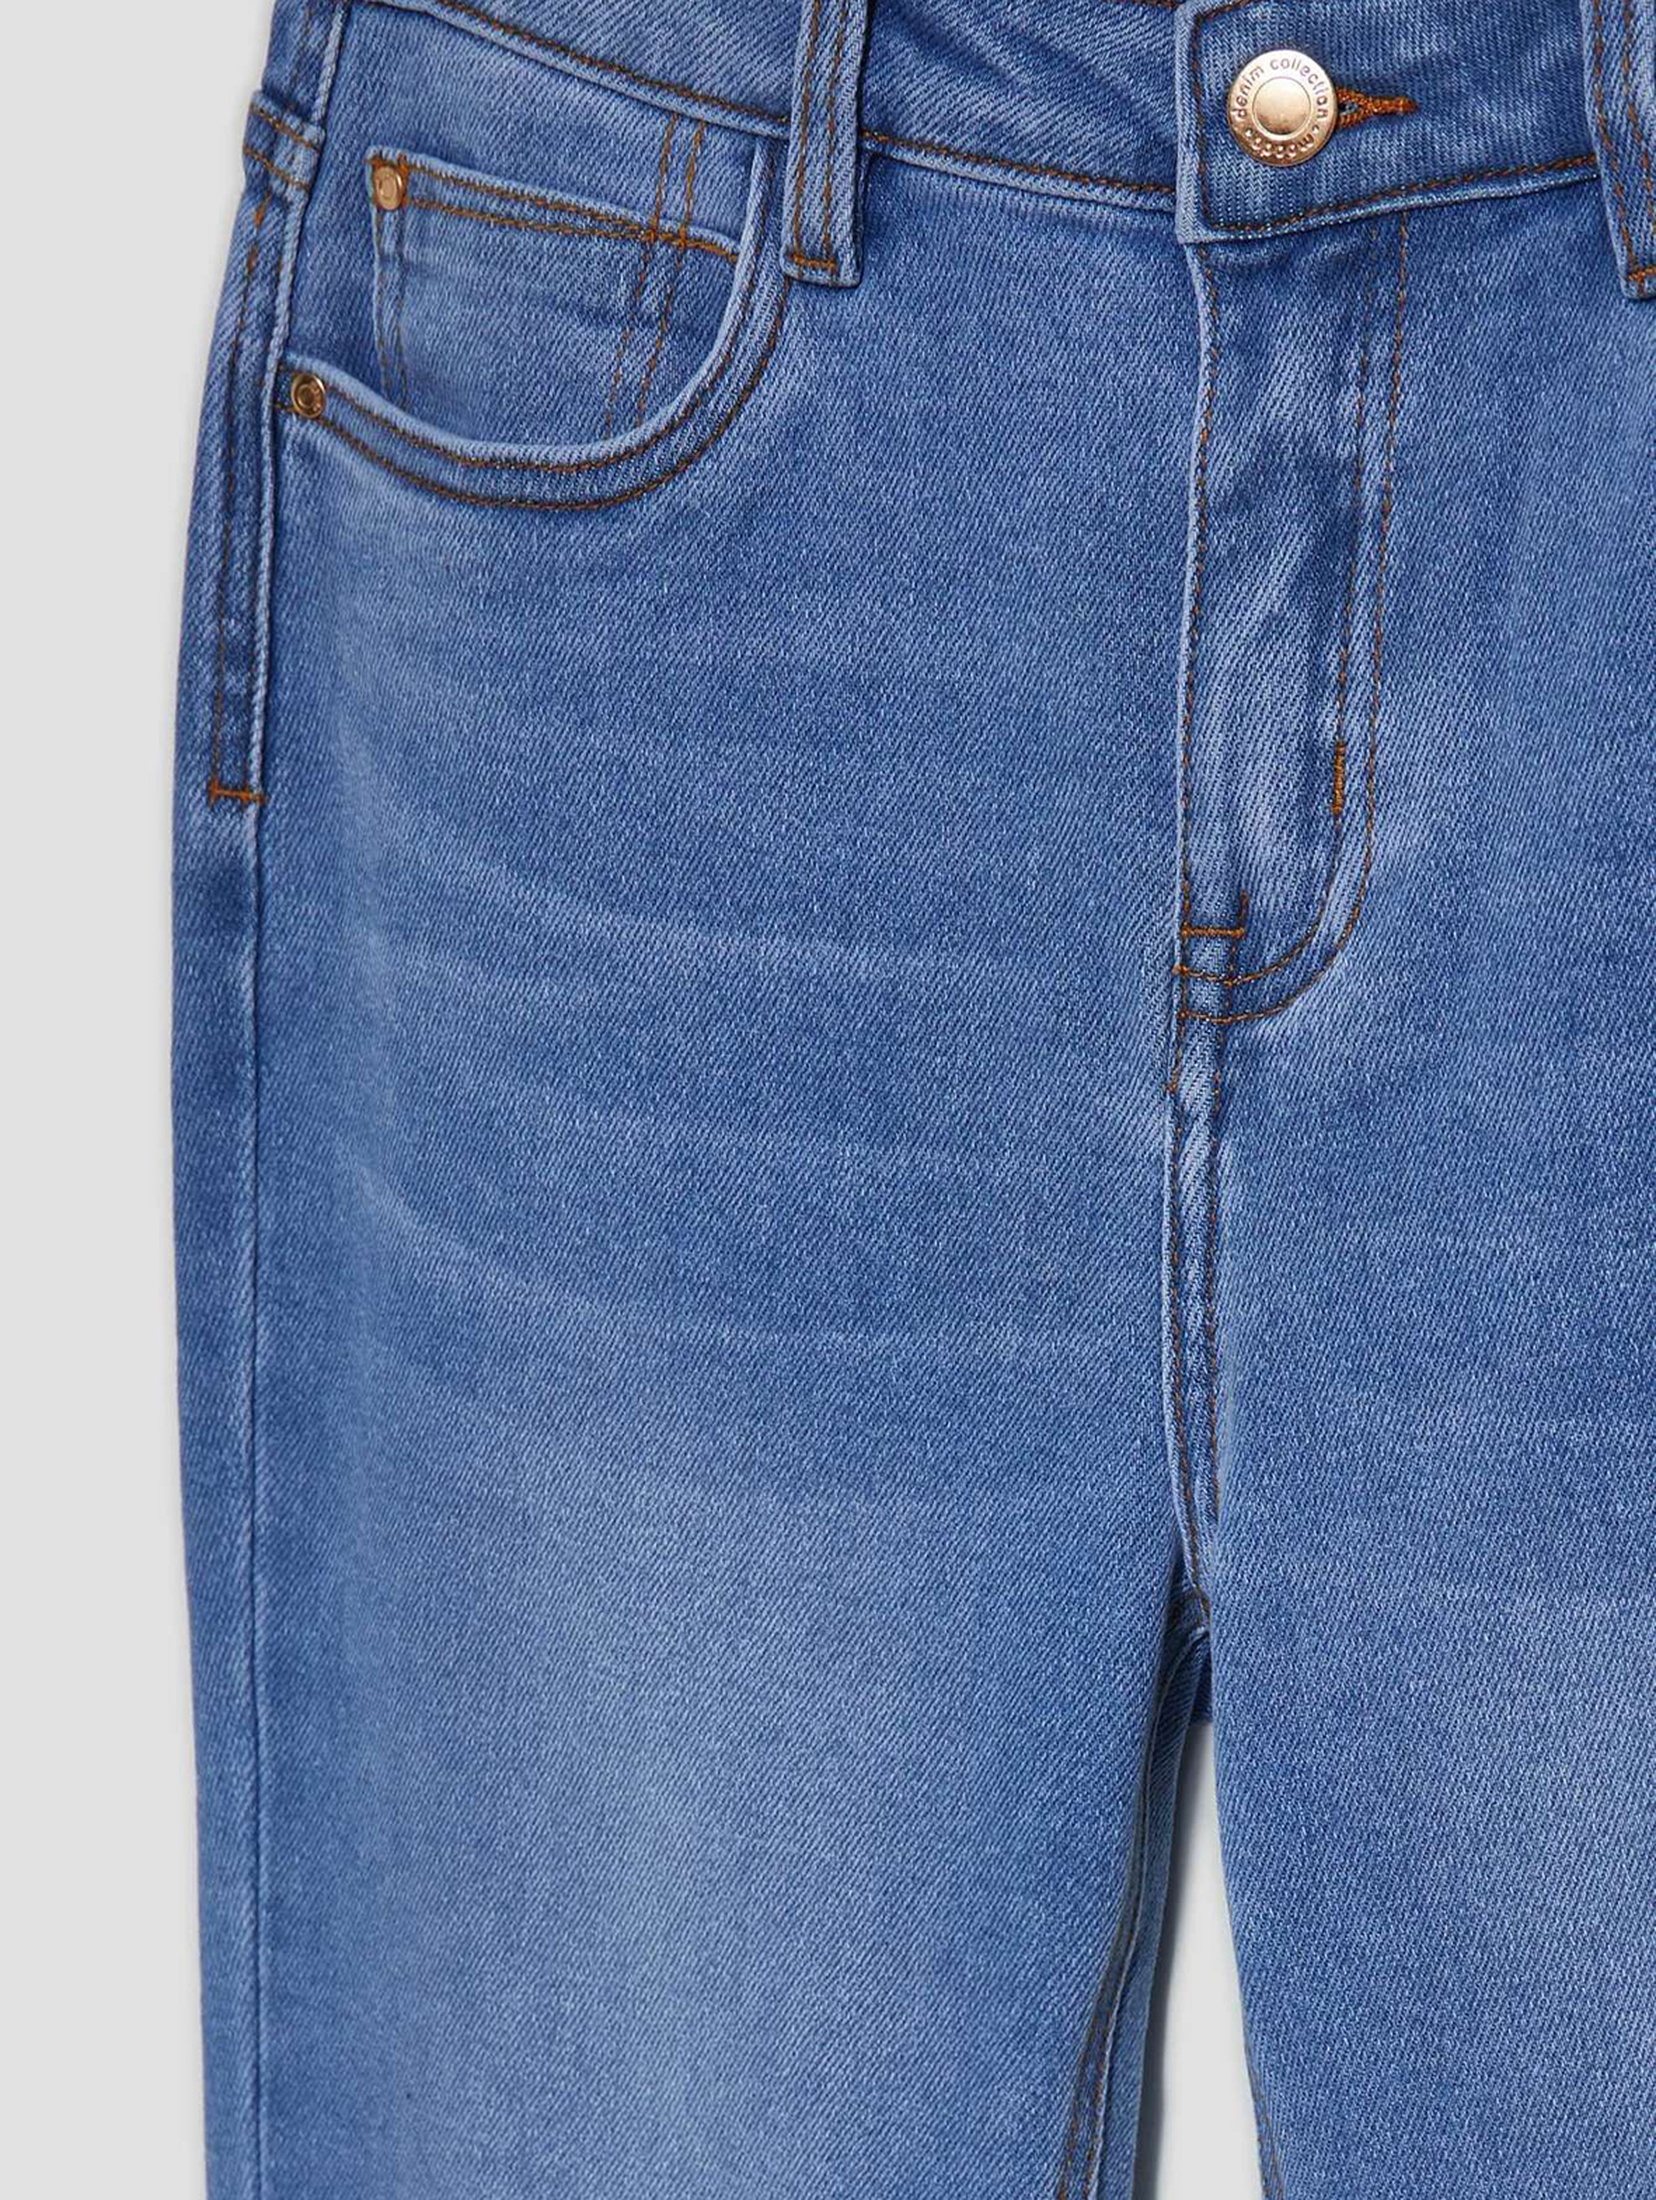 Spodnie damskie jeansowe typu rurki